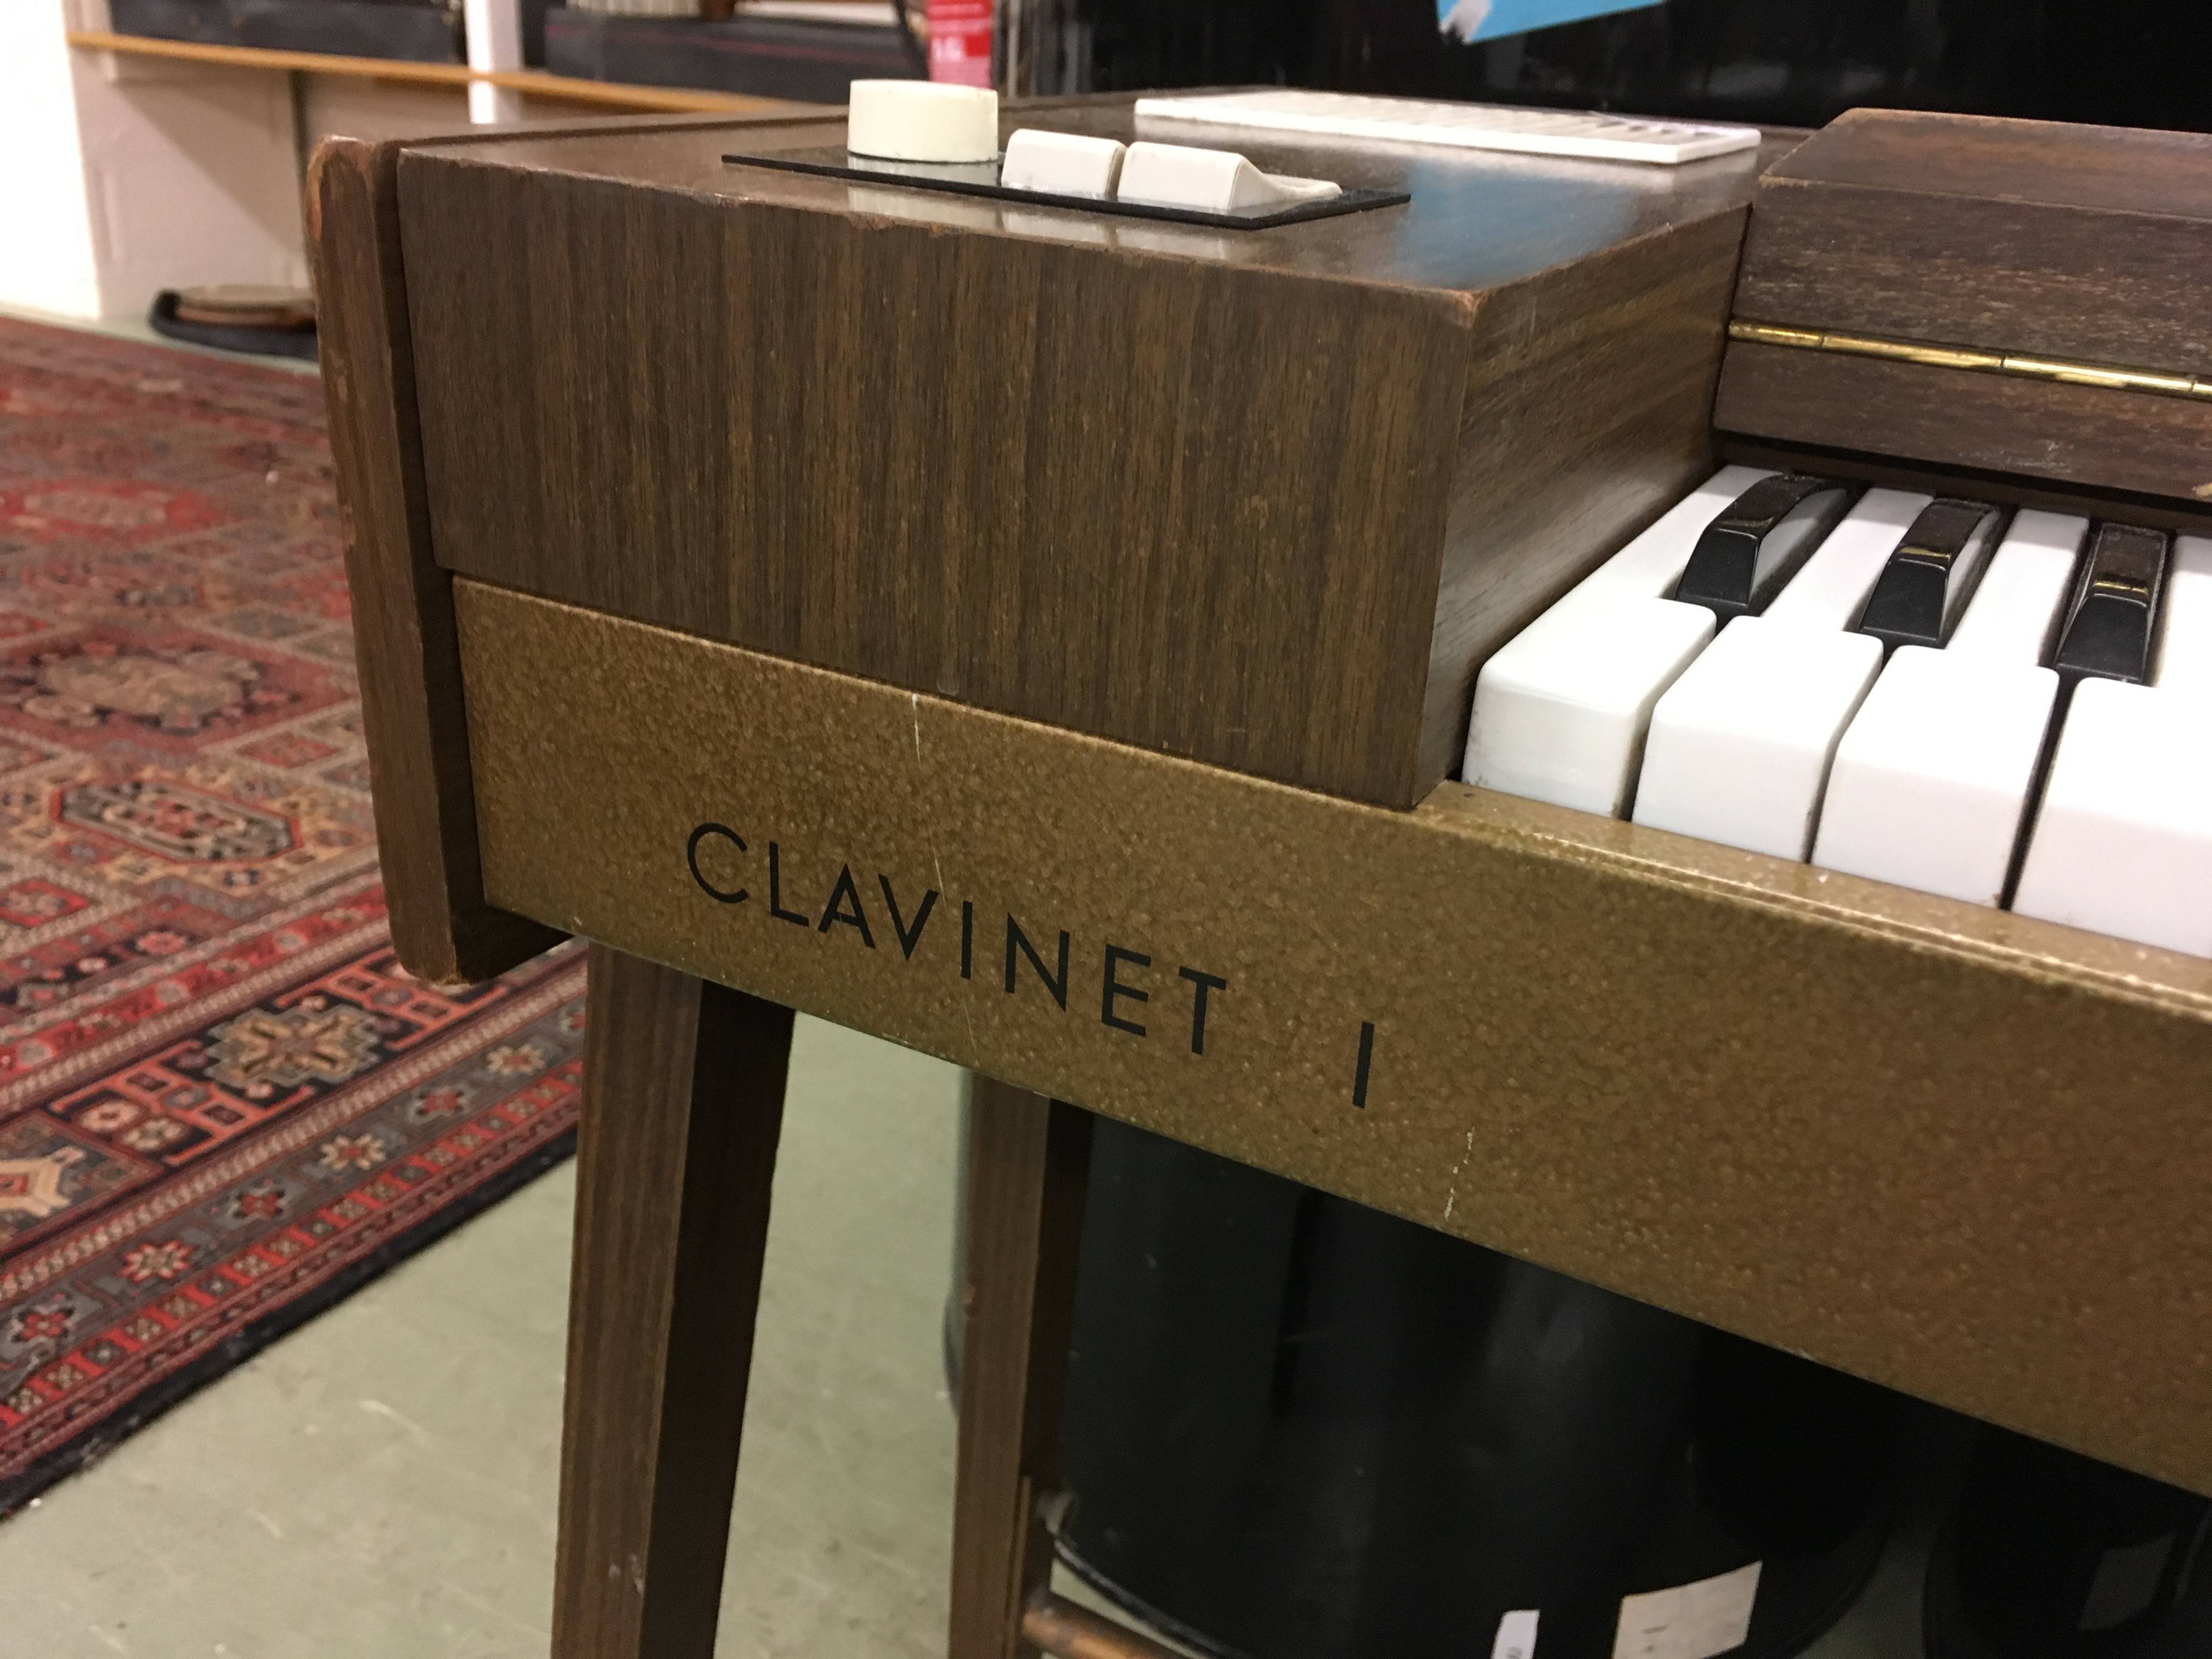 Clavinet I